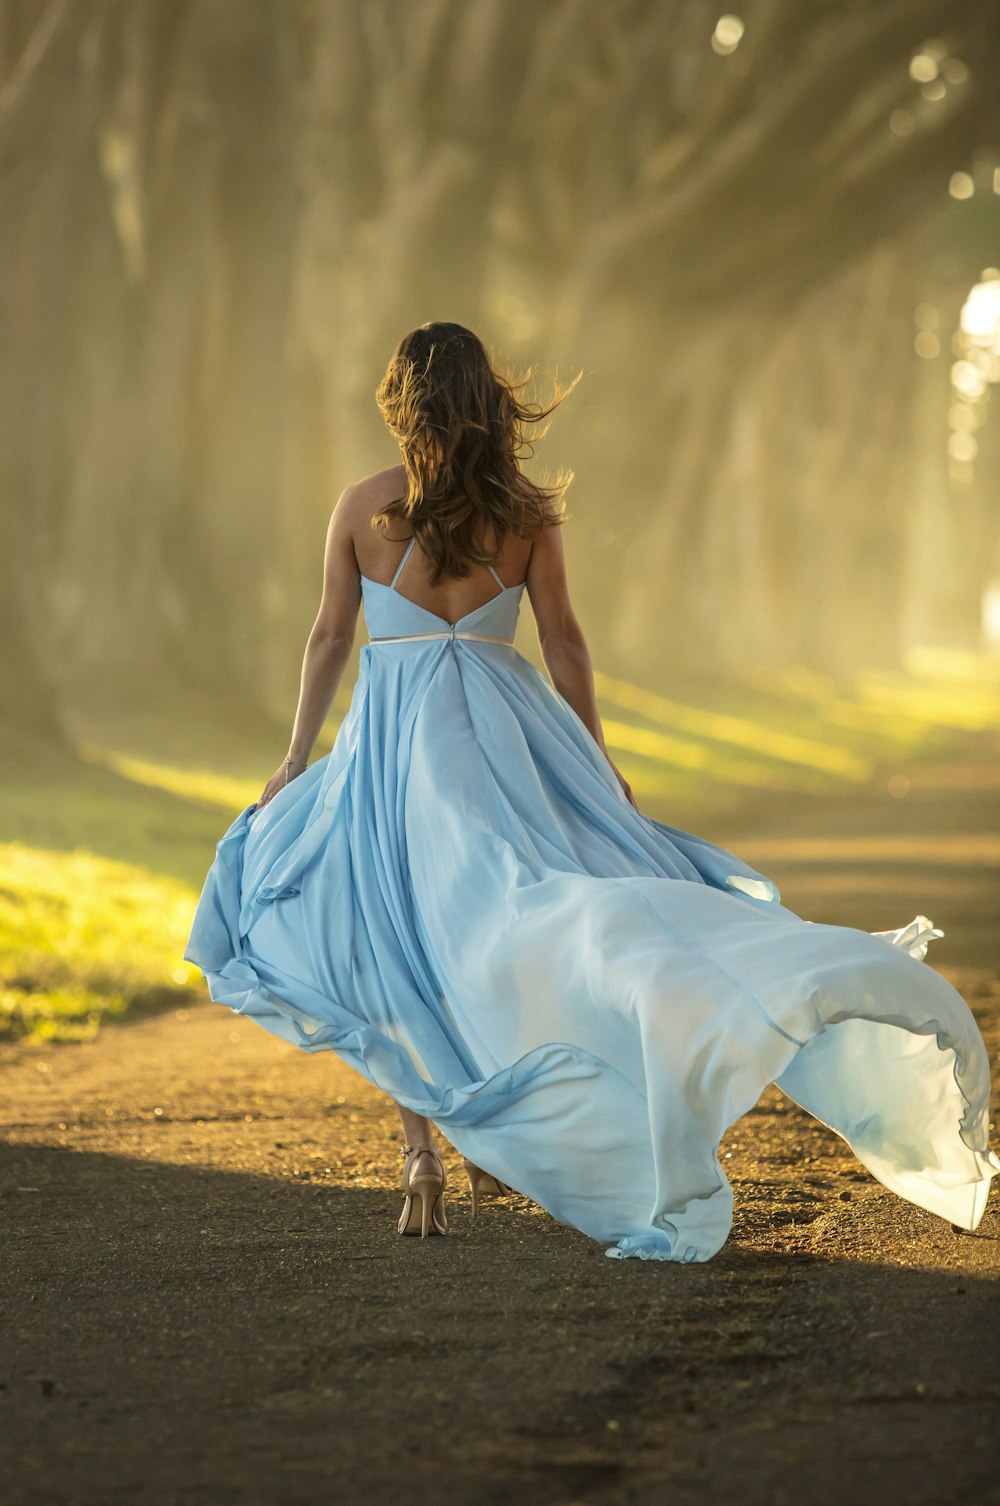 femme en robe bleue marchant sur la route pendant la journée